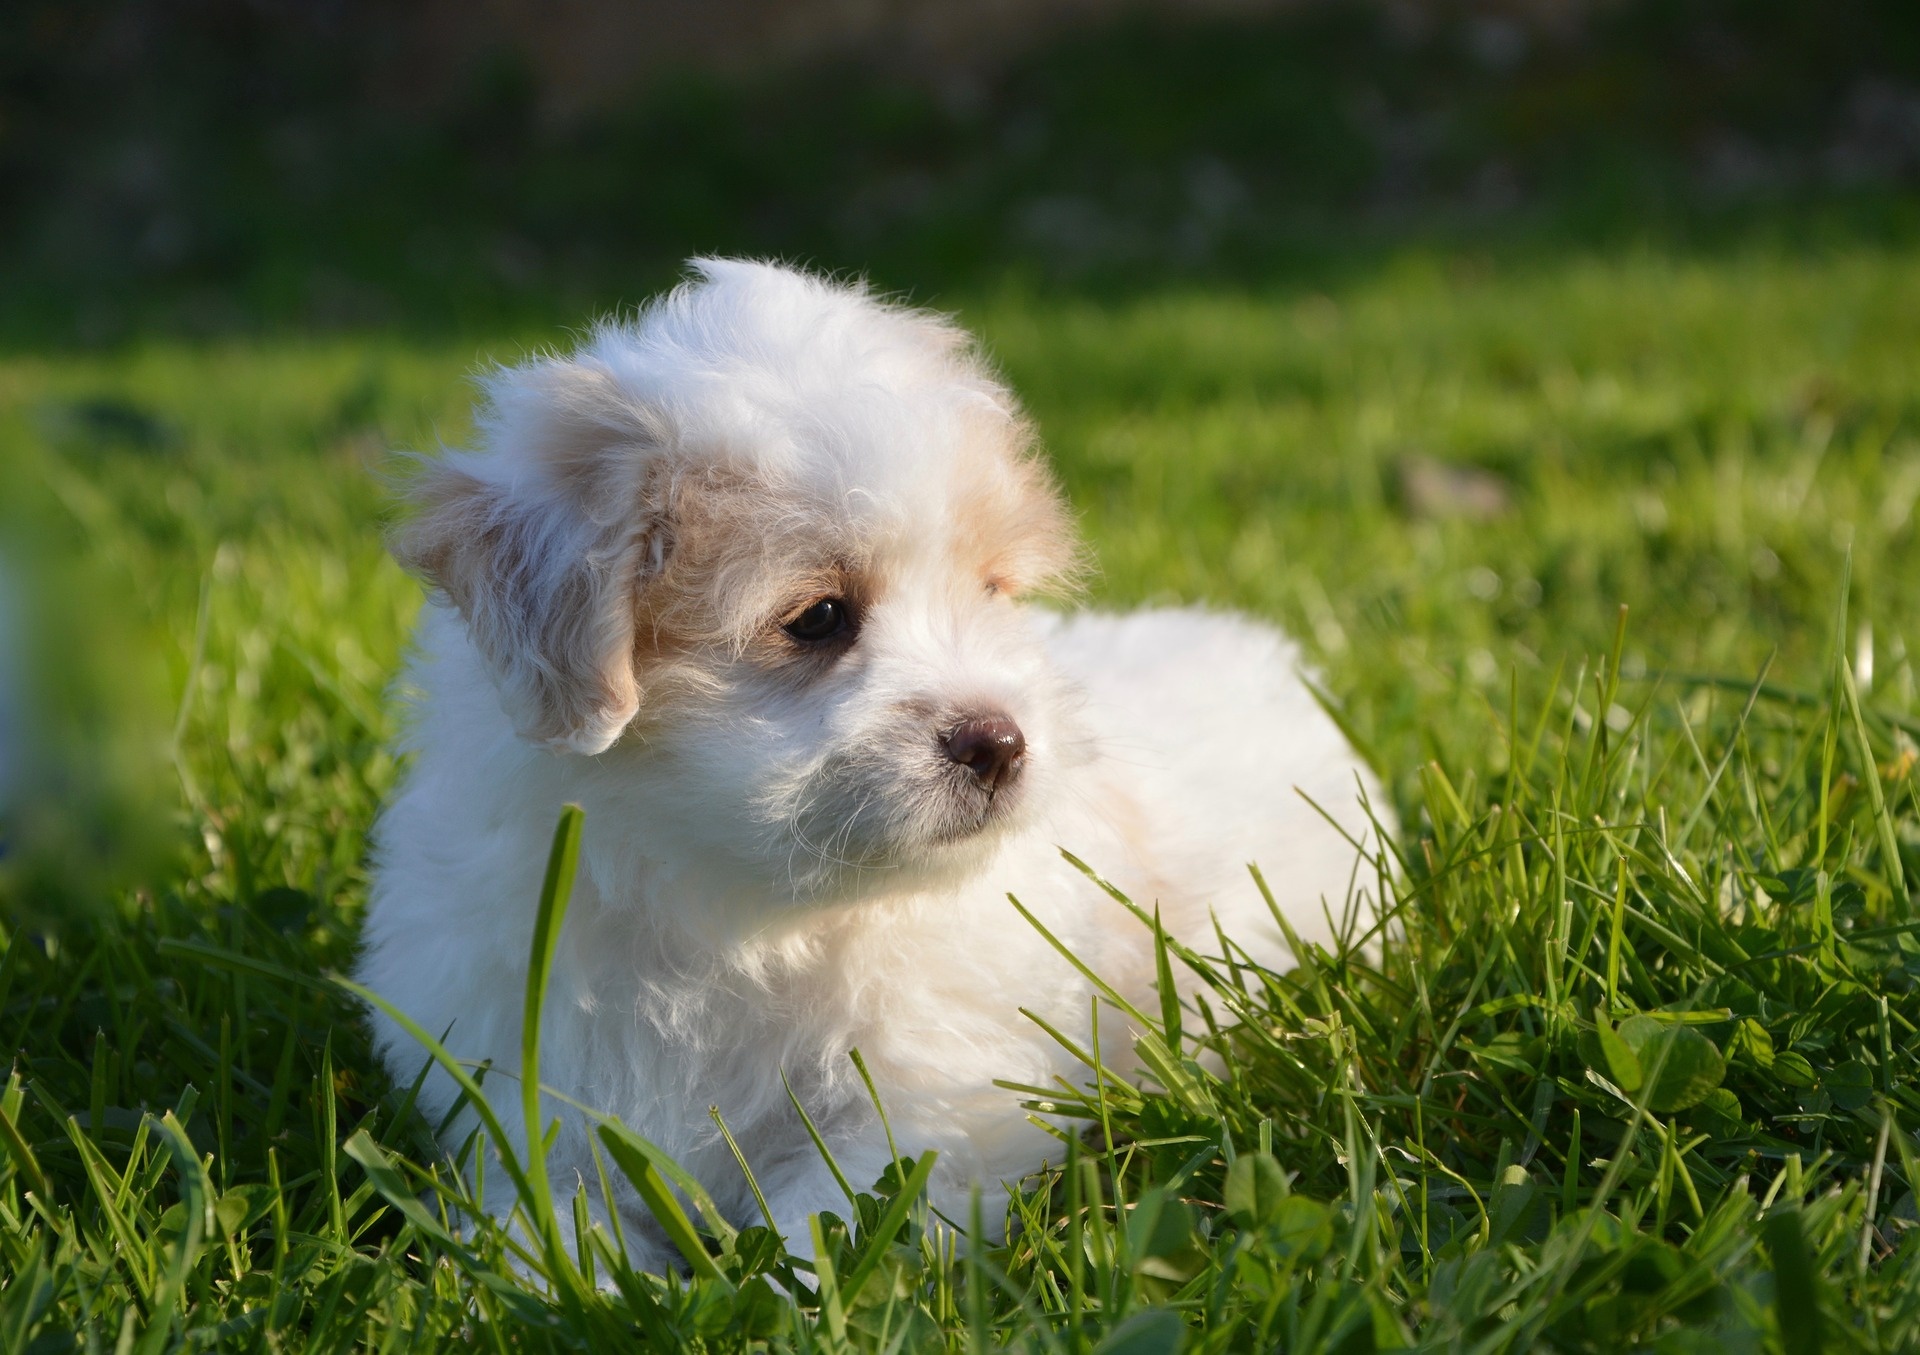 Coton De Tulear White Female Dog